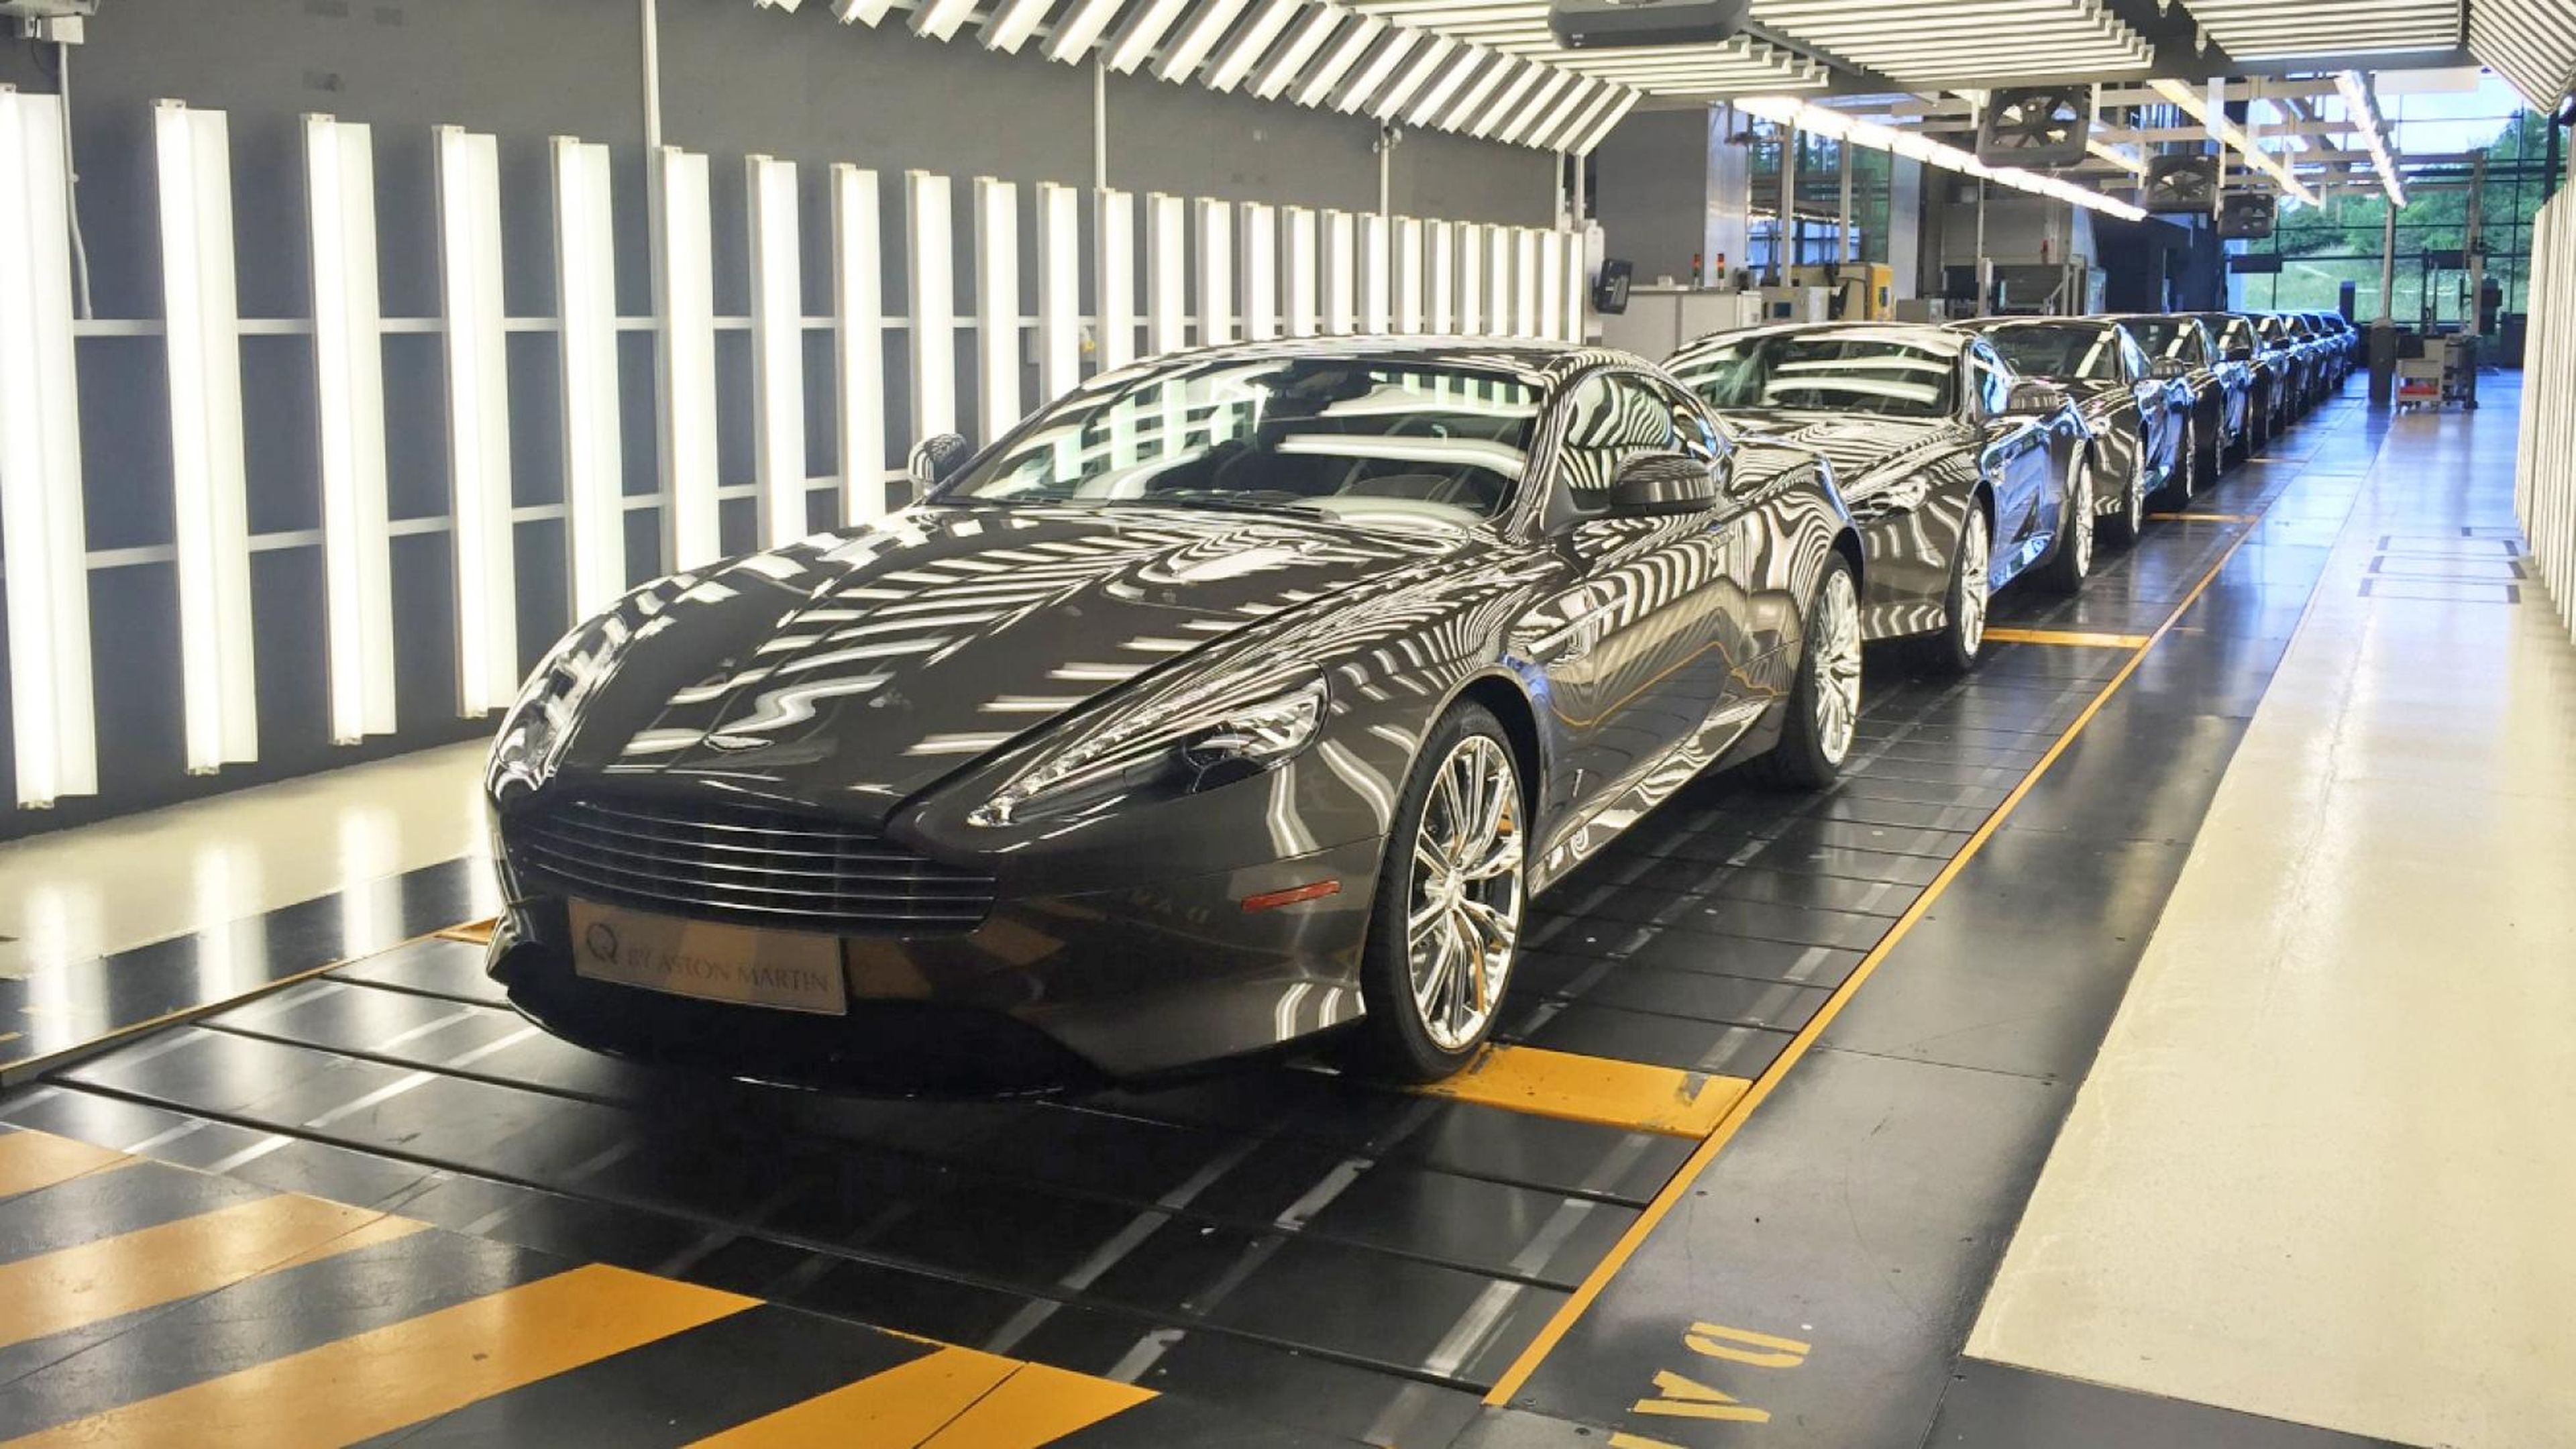 Estos Aston Martin DB9 esperan su última revisión antes de salir de la fábrica. Son los últimos 9 que se harán...